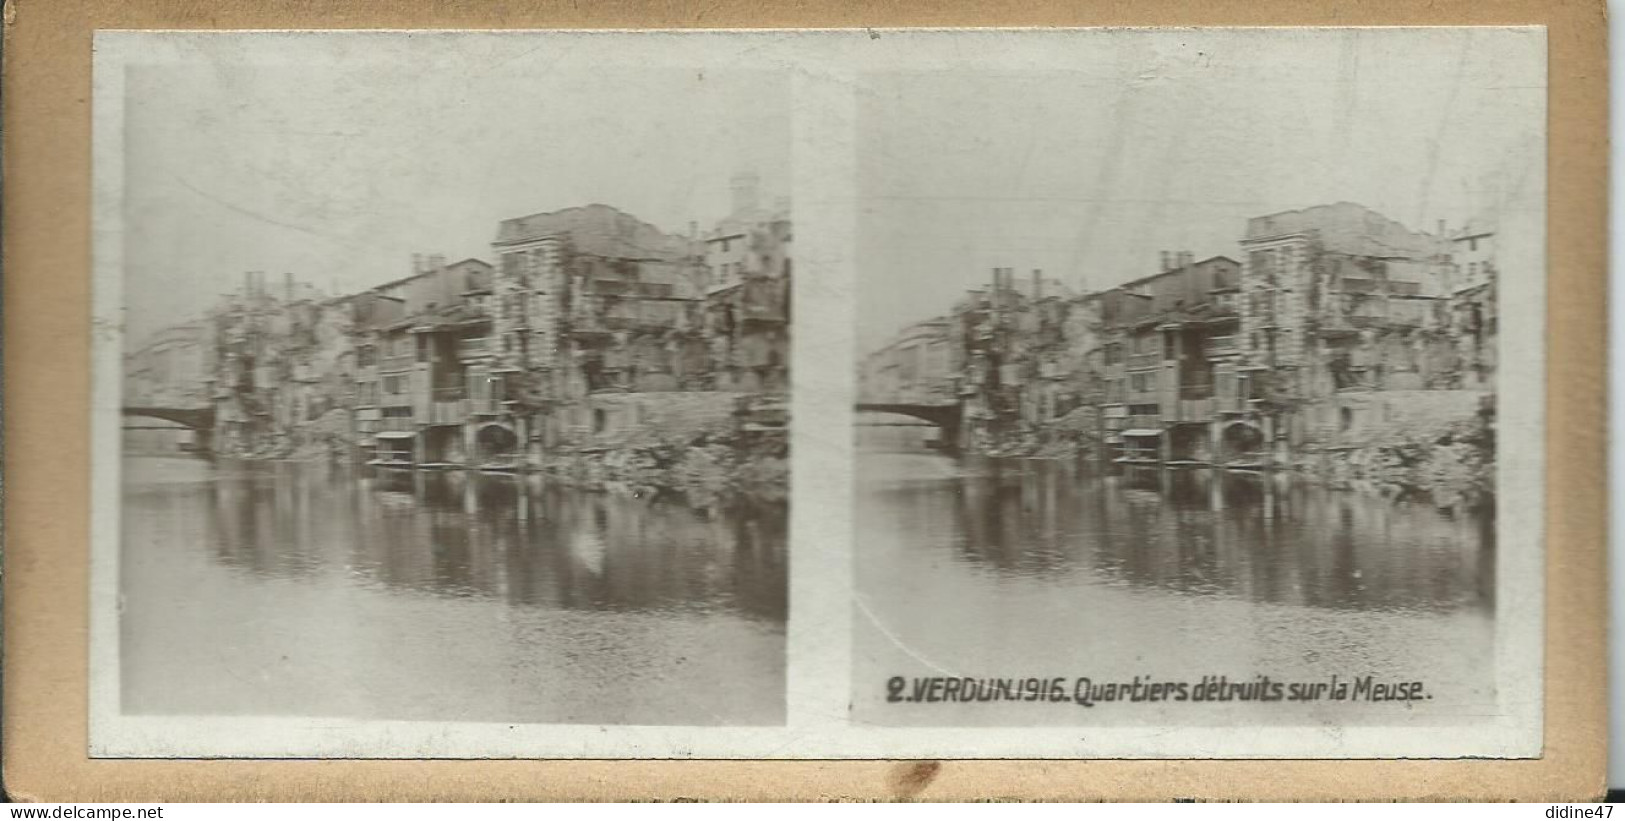 PHOTOS STÉRÉOSCOPIQUES - VERDUN - 1916 Quartier Détruit Sur La Meuse - Fotos Estereoscópicas